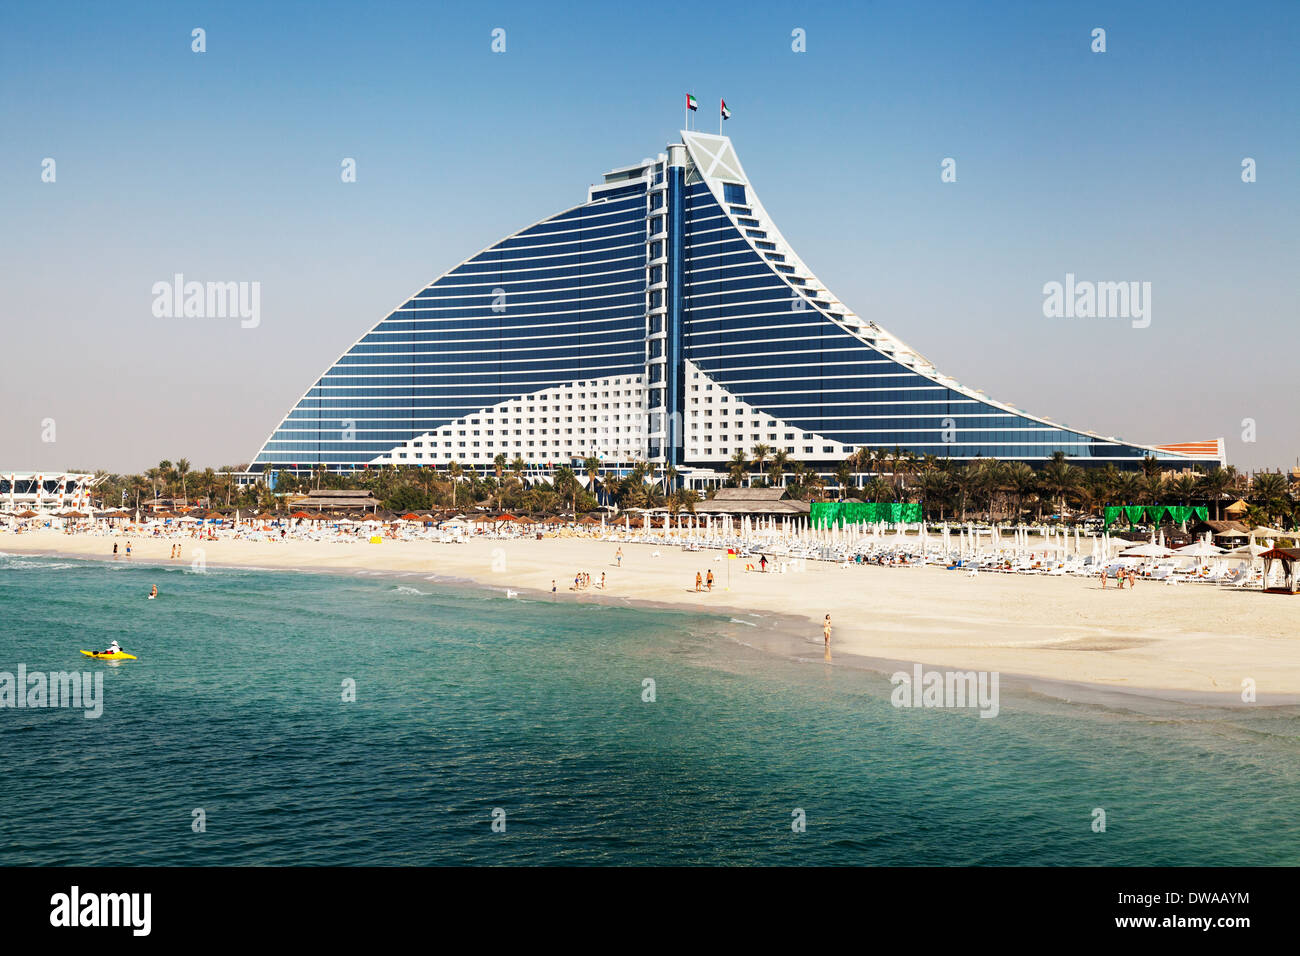 Das Jumeirah Beach Hotel, Dubai;  ein luxuriöses 5-Sterne-Hotel, Dubai, Vereinigte Arabische Emirate, Vereinigte Arabische Emirate Naher Osten Stockfoto